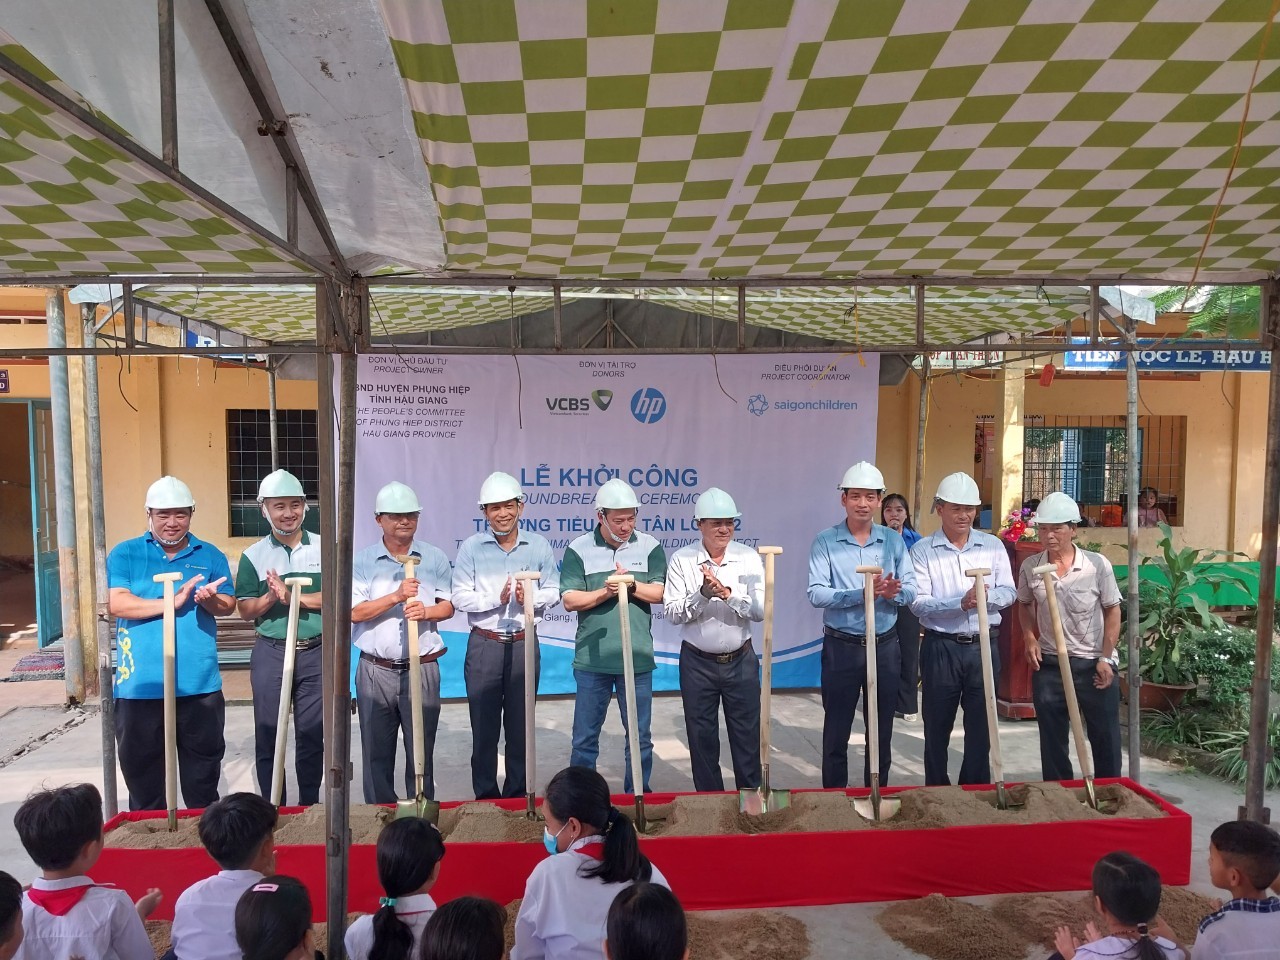 Tổ chức Saigon Children's Charity viện trợ 1 tỷ đồng xây dựng phòng học cho trẻ em Hậu Giang